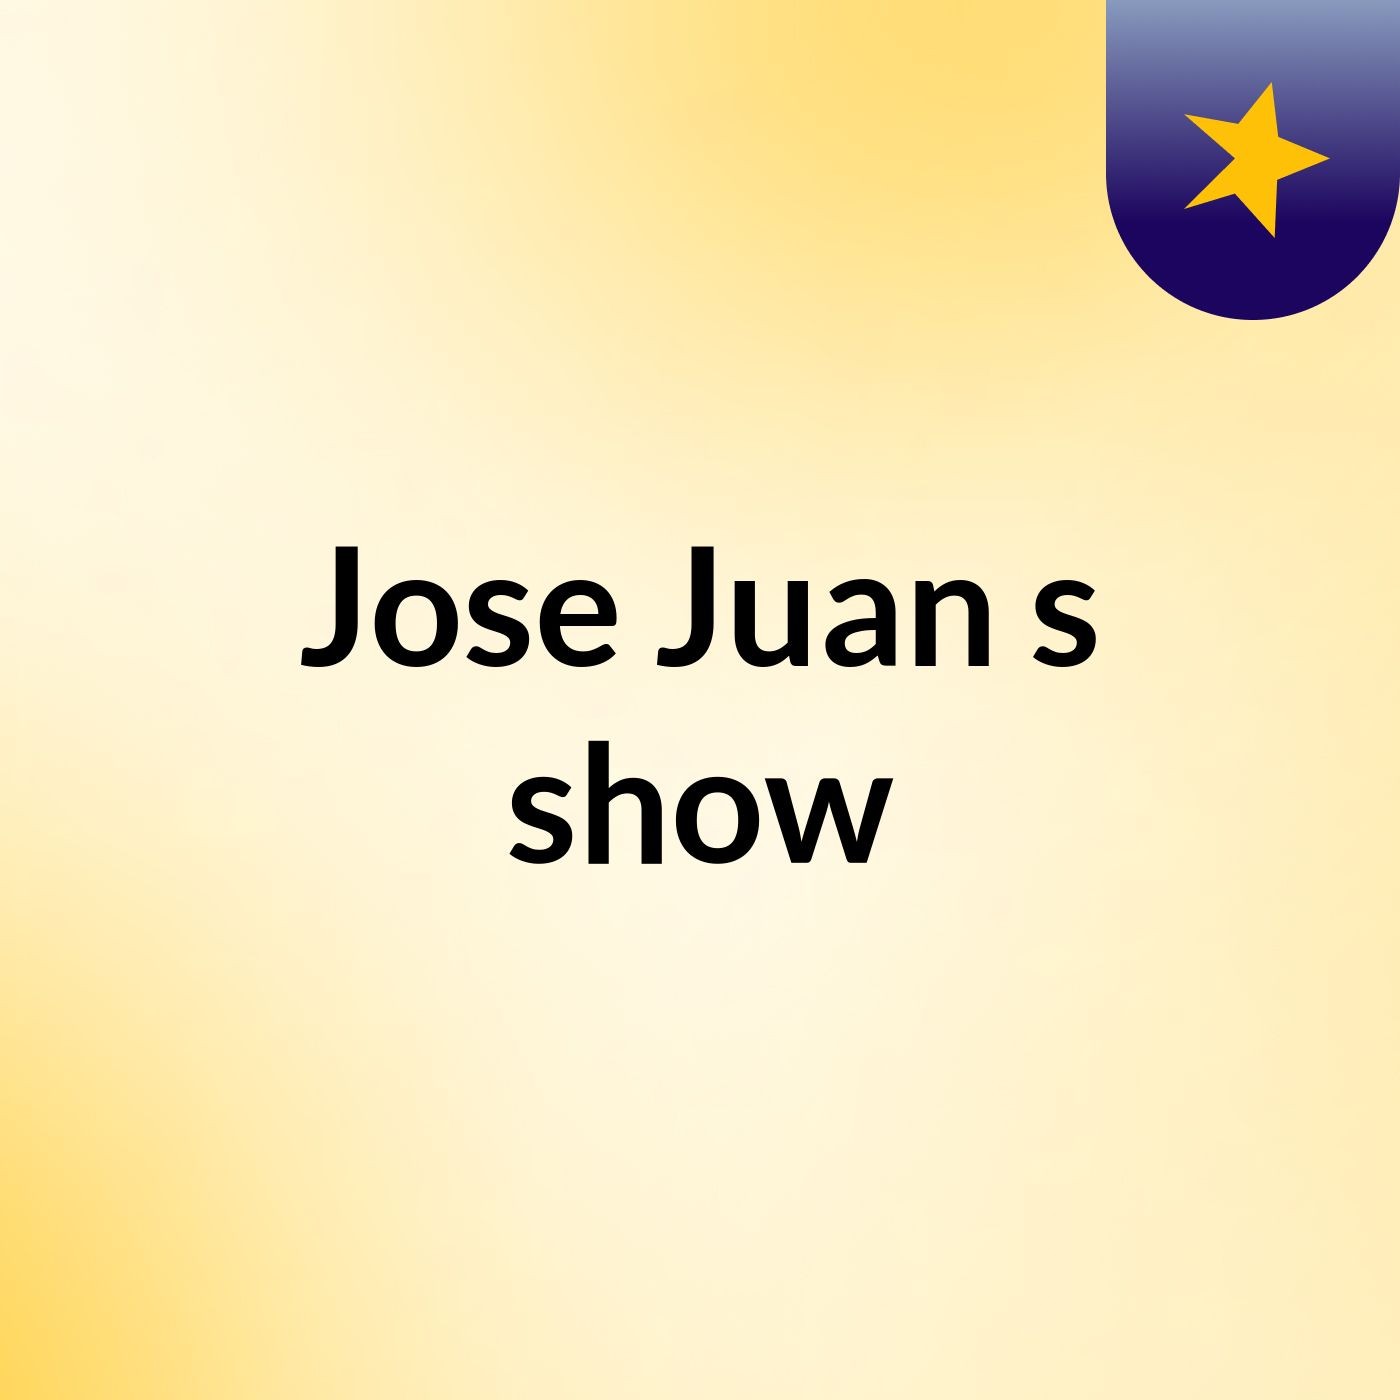 Jose Juan's show